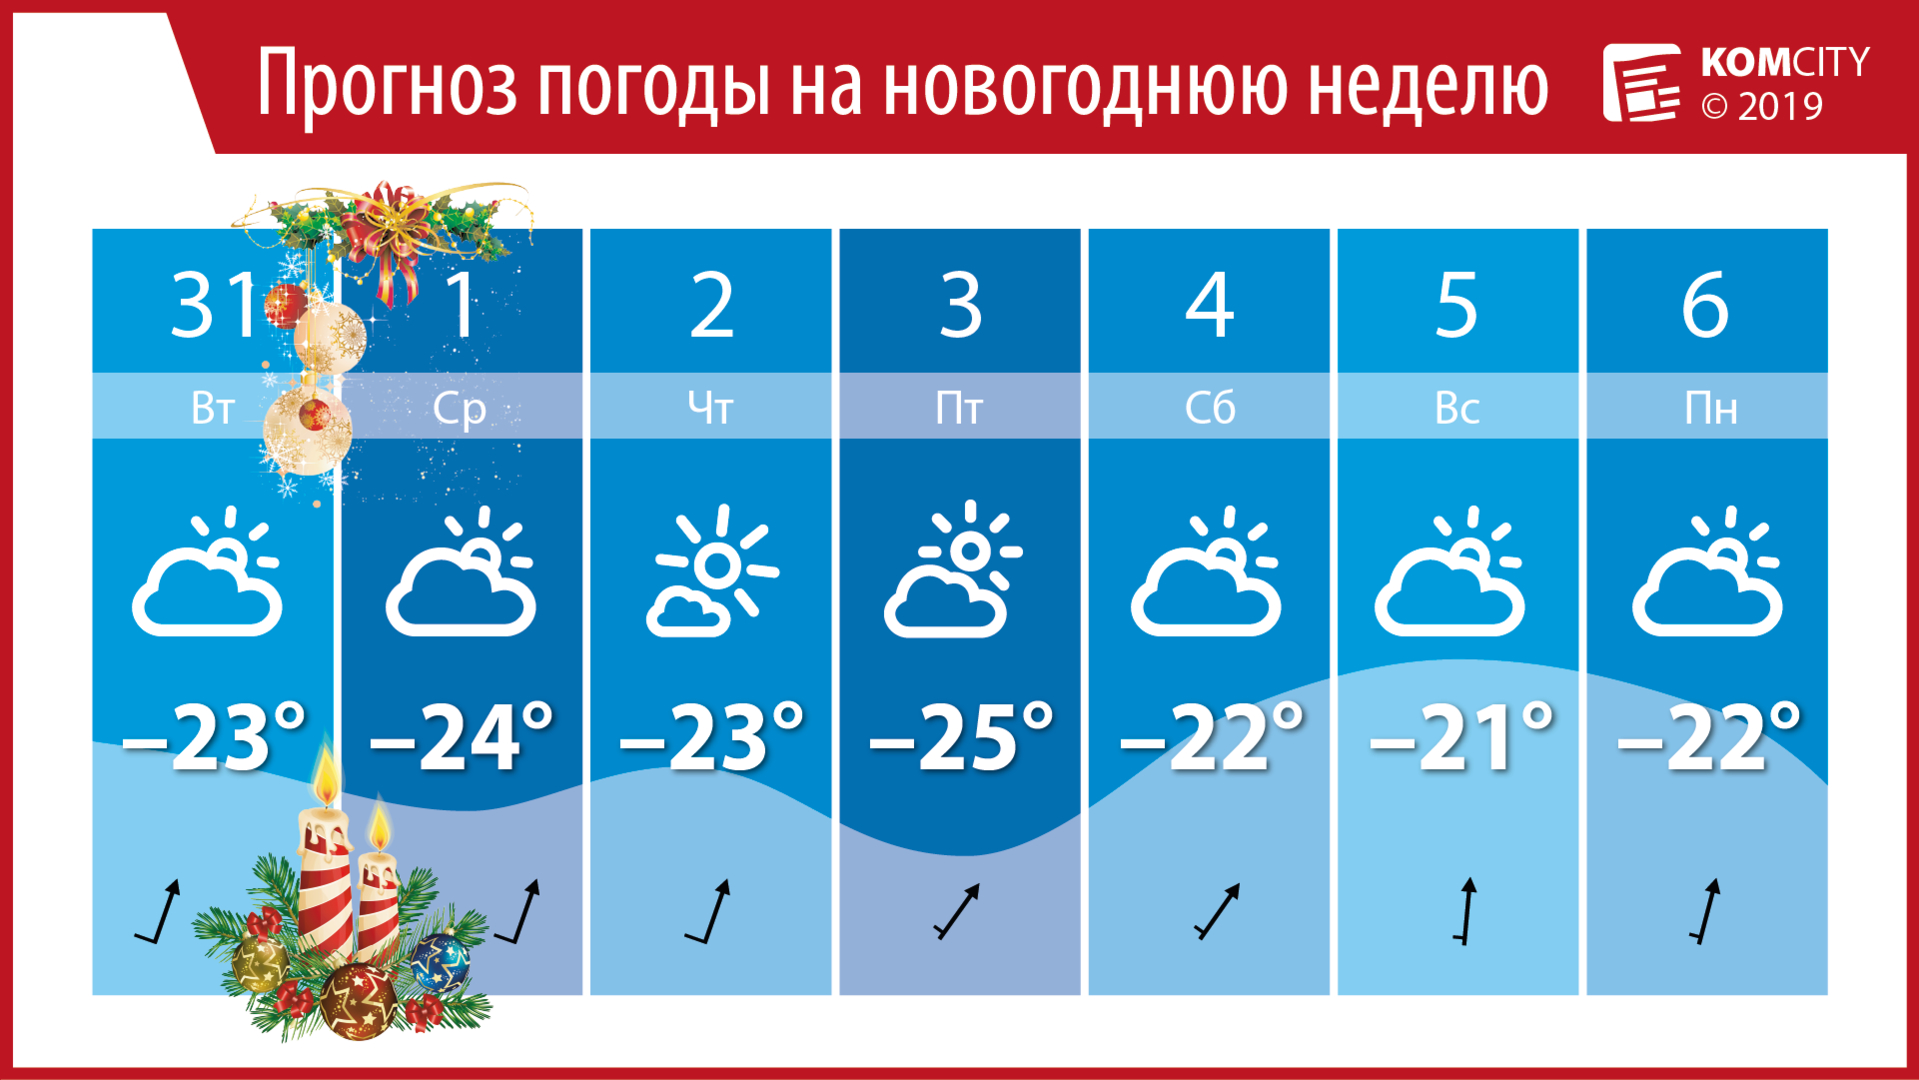 Начало нового года в Комсомольске будет морозным